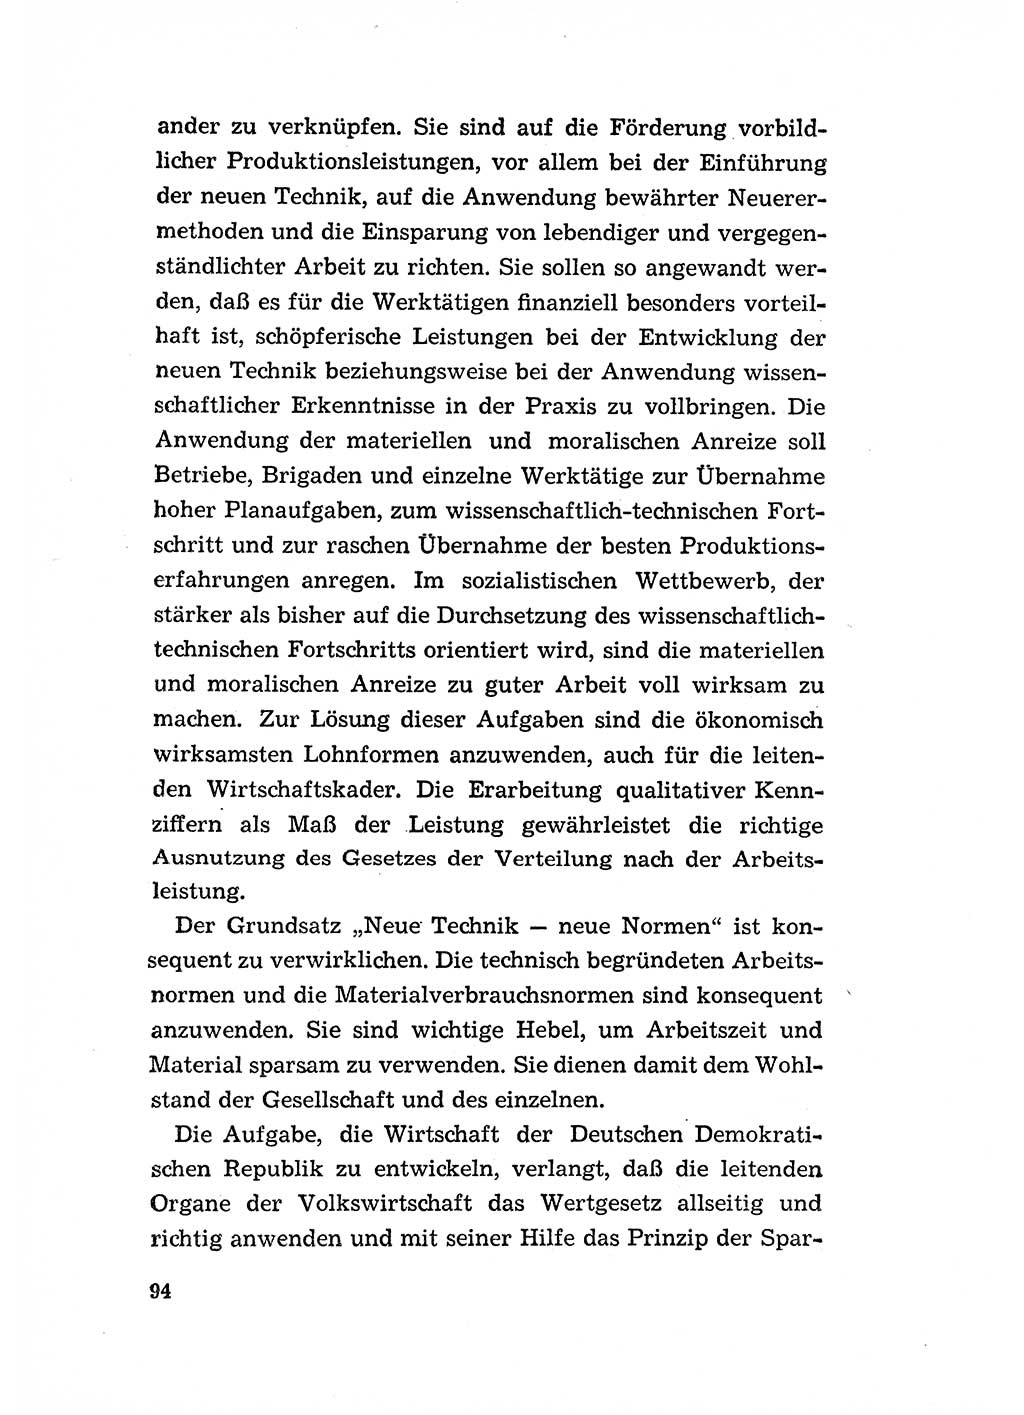 Programm der Sozialistischen Einheitspartei Deutschlands (SED) [Deutsche Demokratische Republik (DDR)] 1963, Seite 94 (Progr. SED DDR 1963, S. 94)